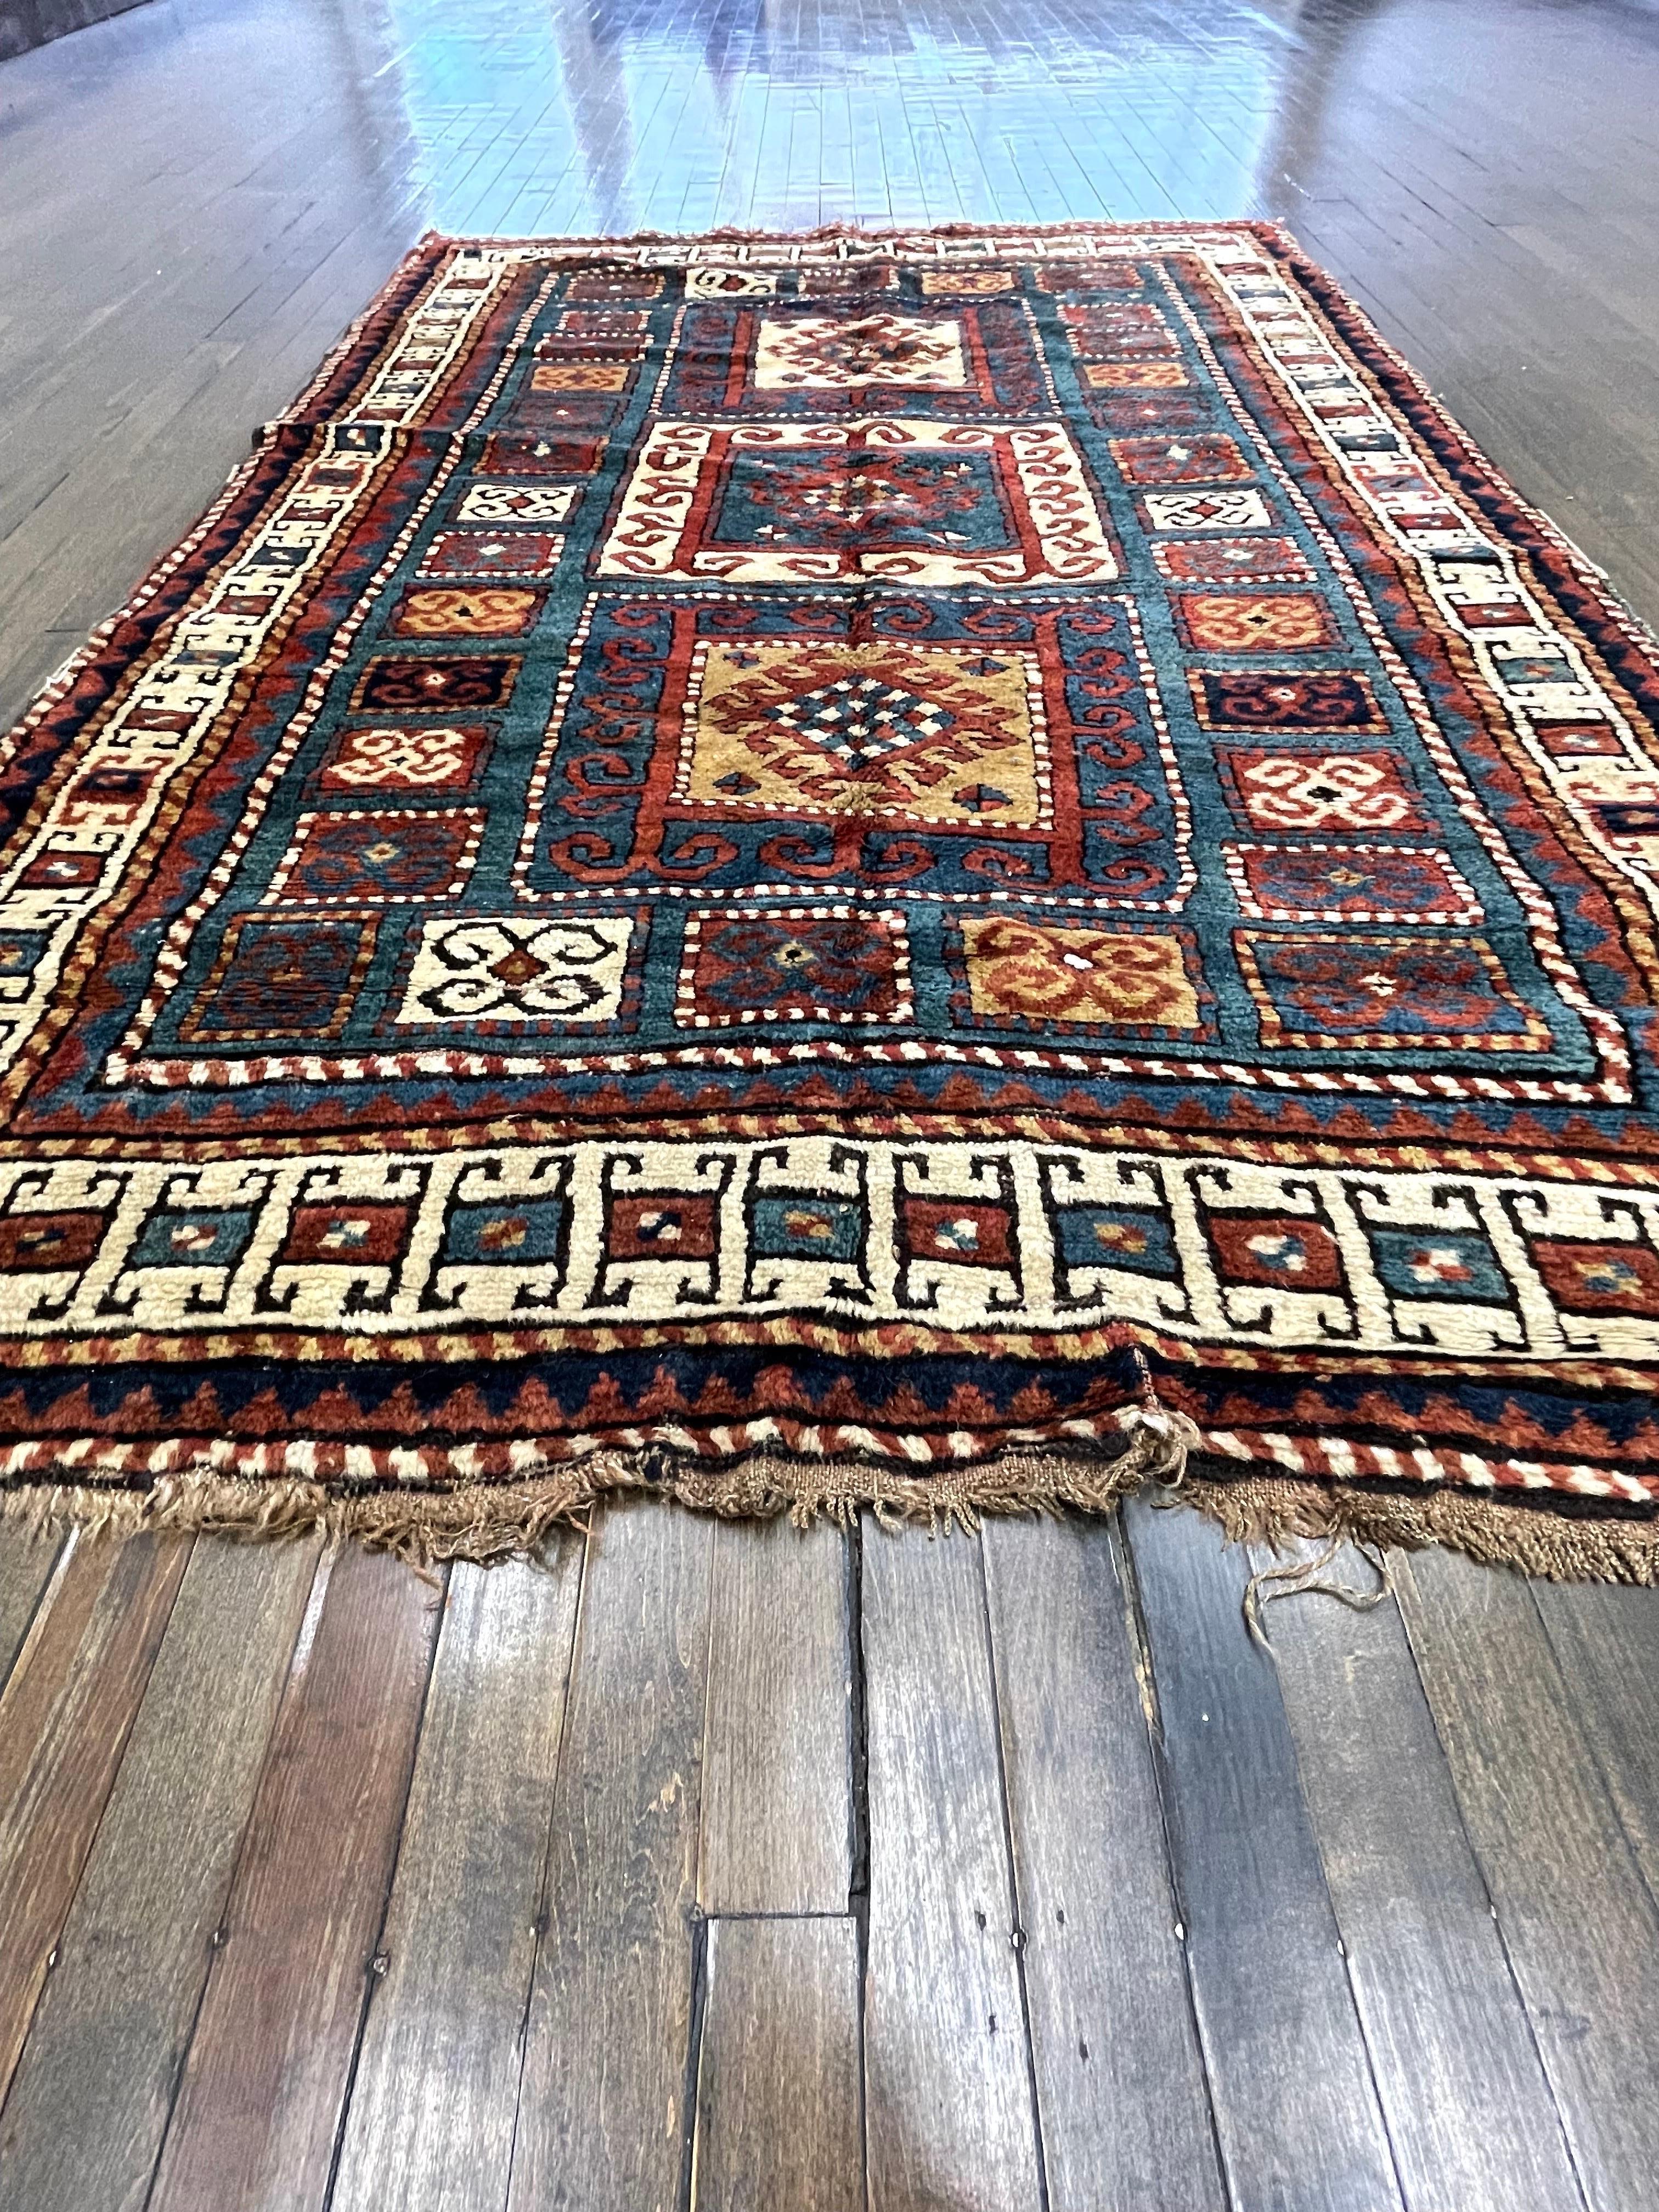 Dieser Teppich ist ein kaukasischer Kazak, der im Südwestkaukasus handgewebt wird und als Kazak mit drei Medaillons bekannt ist. Ein ausgesprochen hübsches Exemplar dieser Gruppe von antiken Kaukasiern.

Eine seltene Besonderheit dieses dreifachen